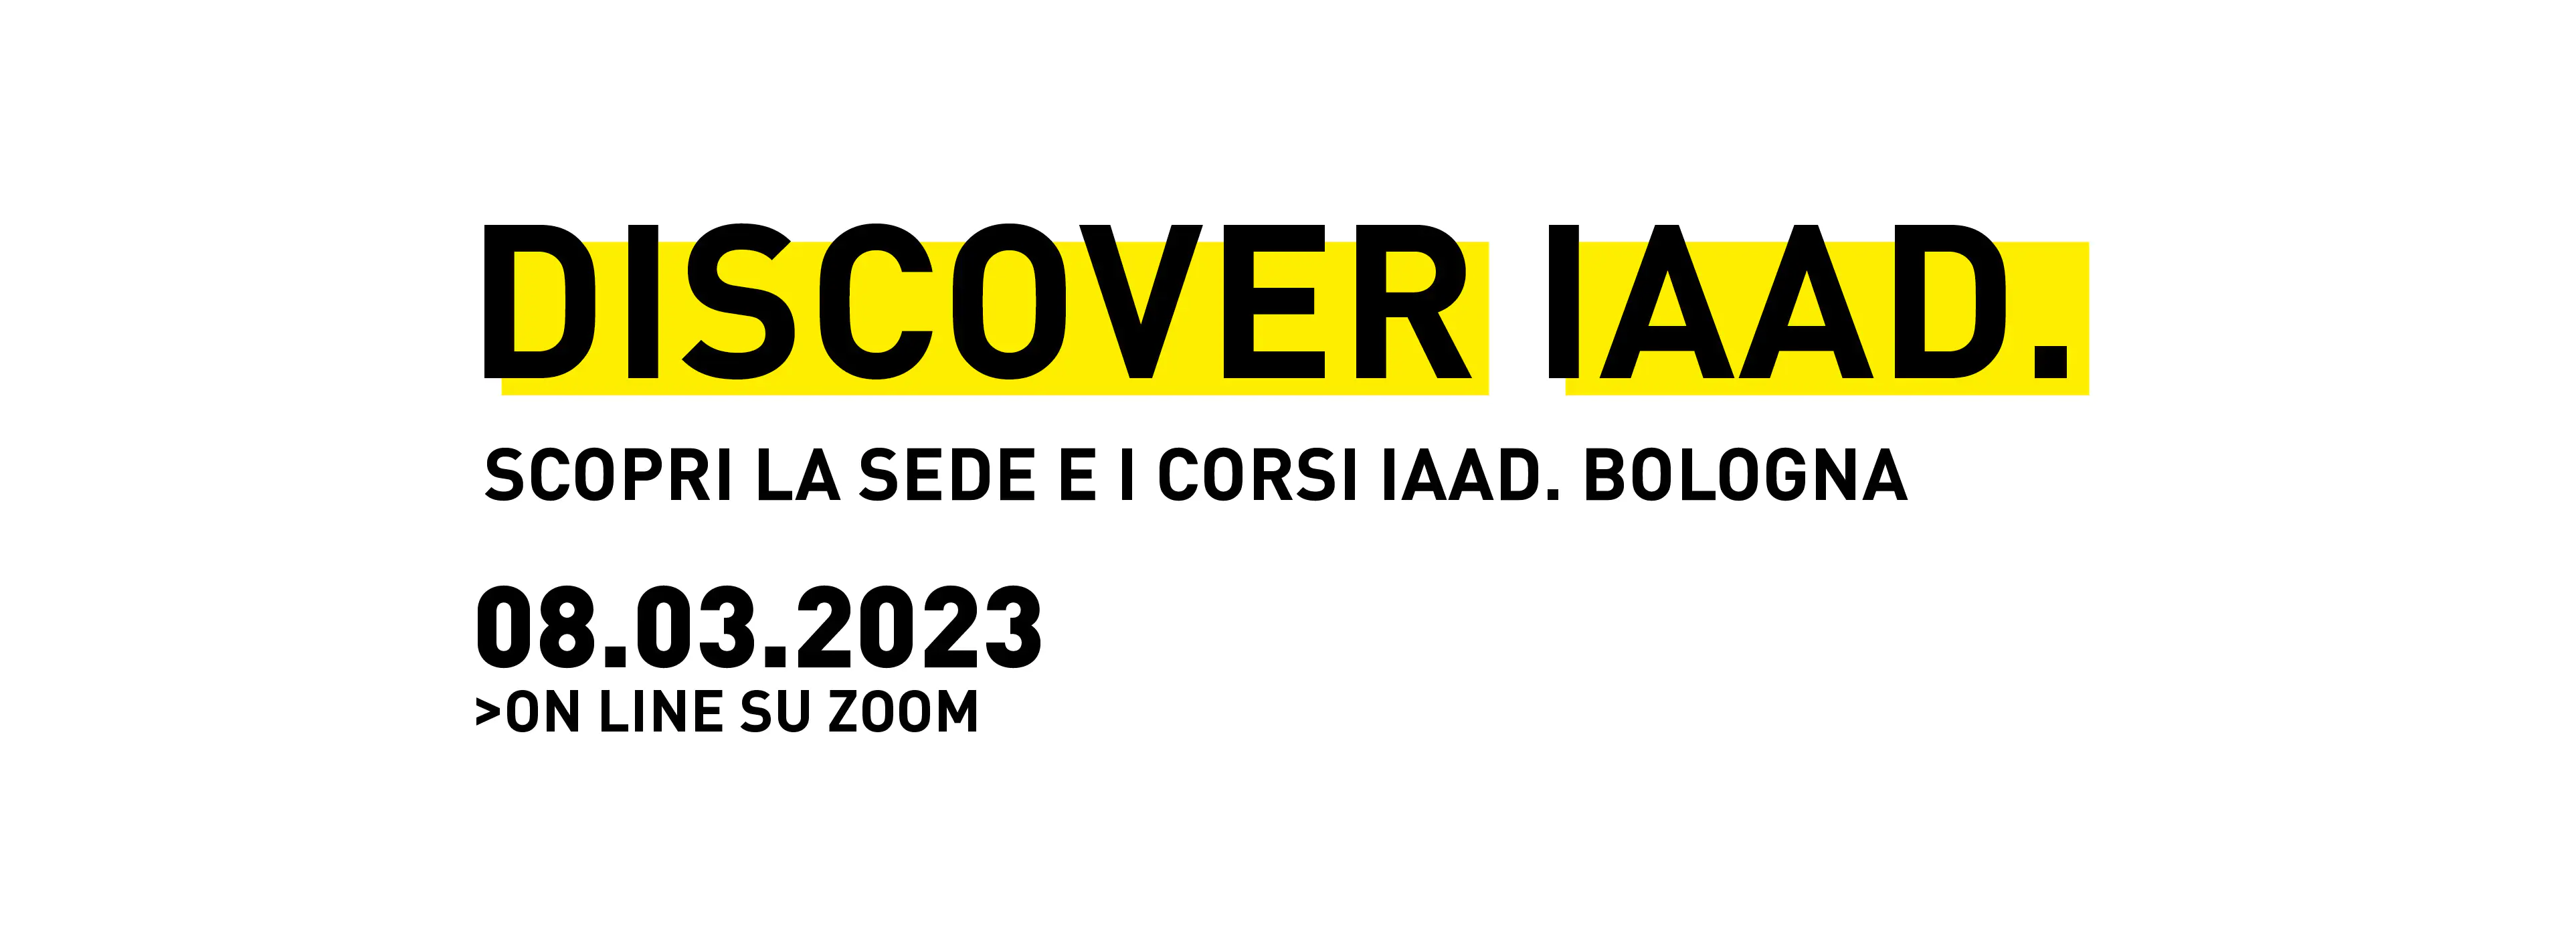 Discover IAAD. è l'evento di presentazione dell'offerta formativa di IAAD. Bologna